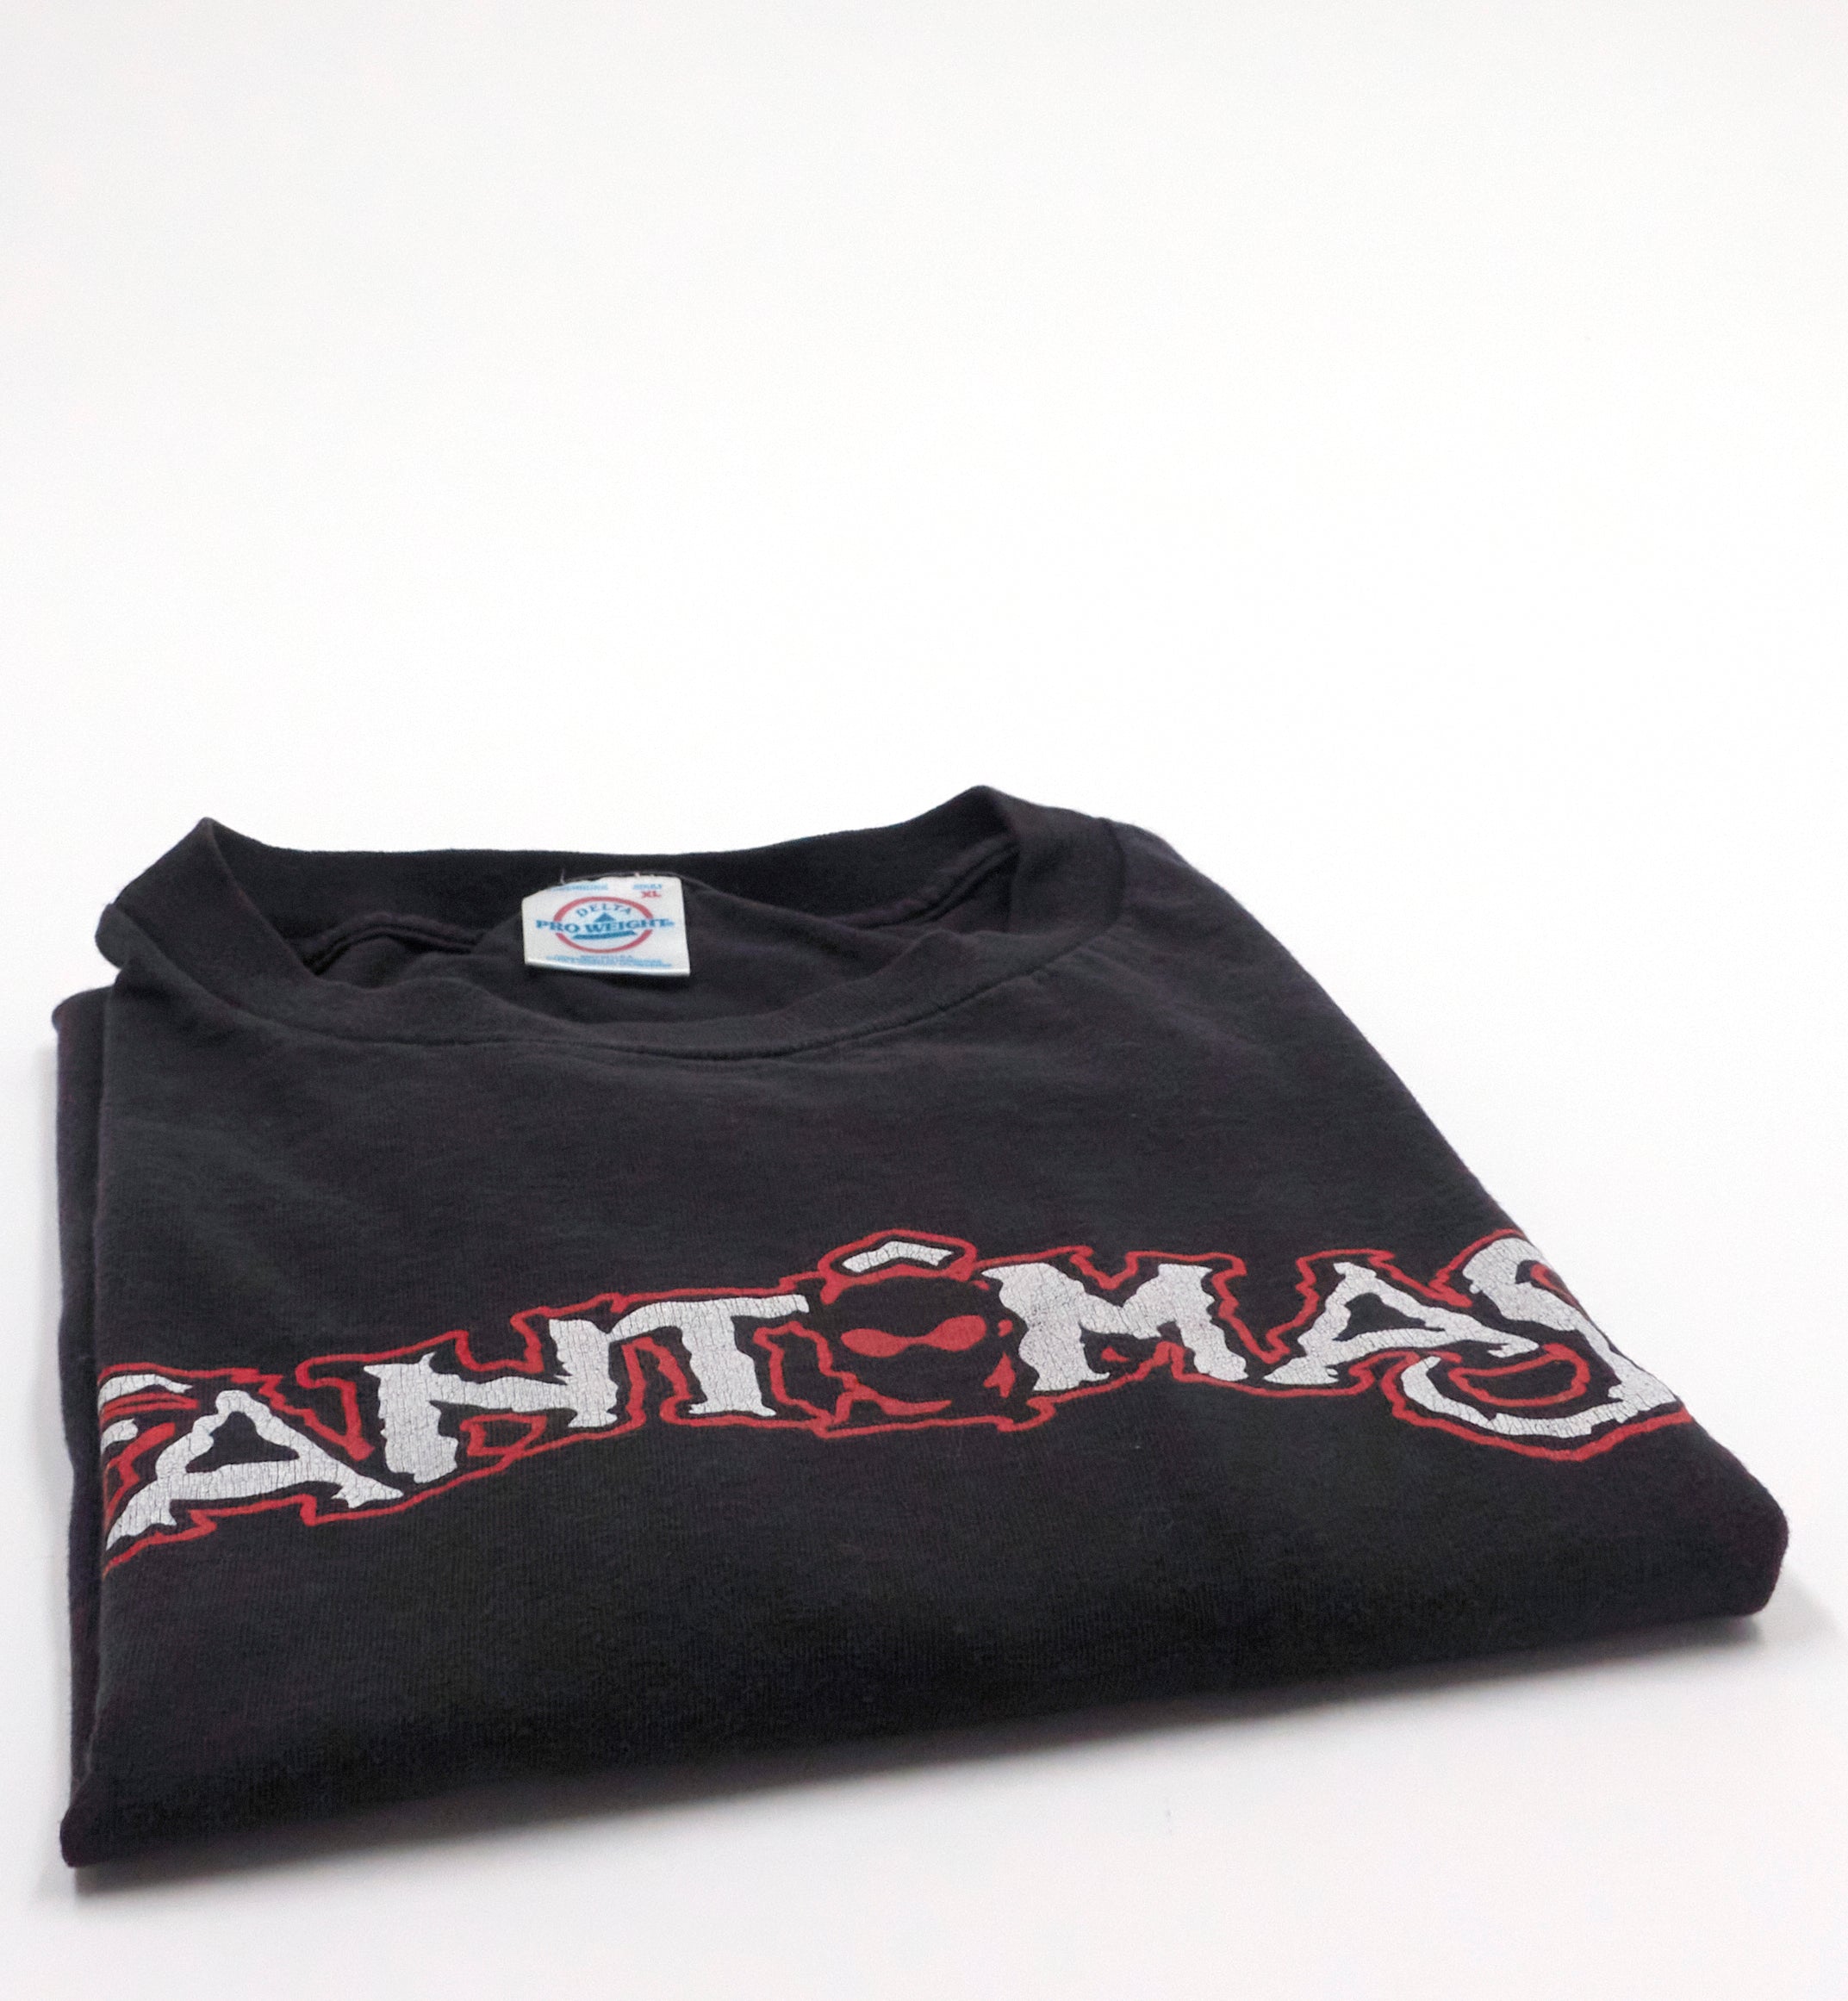 Fantômas - Delìrium Còrdia 2004 Tour Issue Shirt Size XL